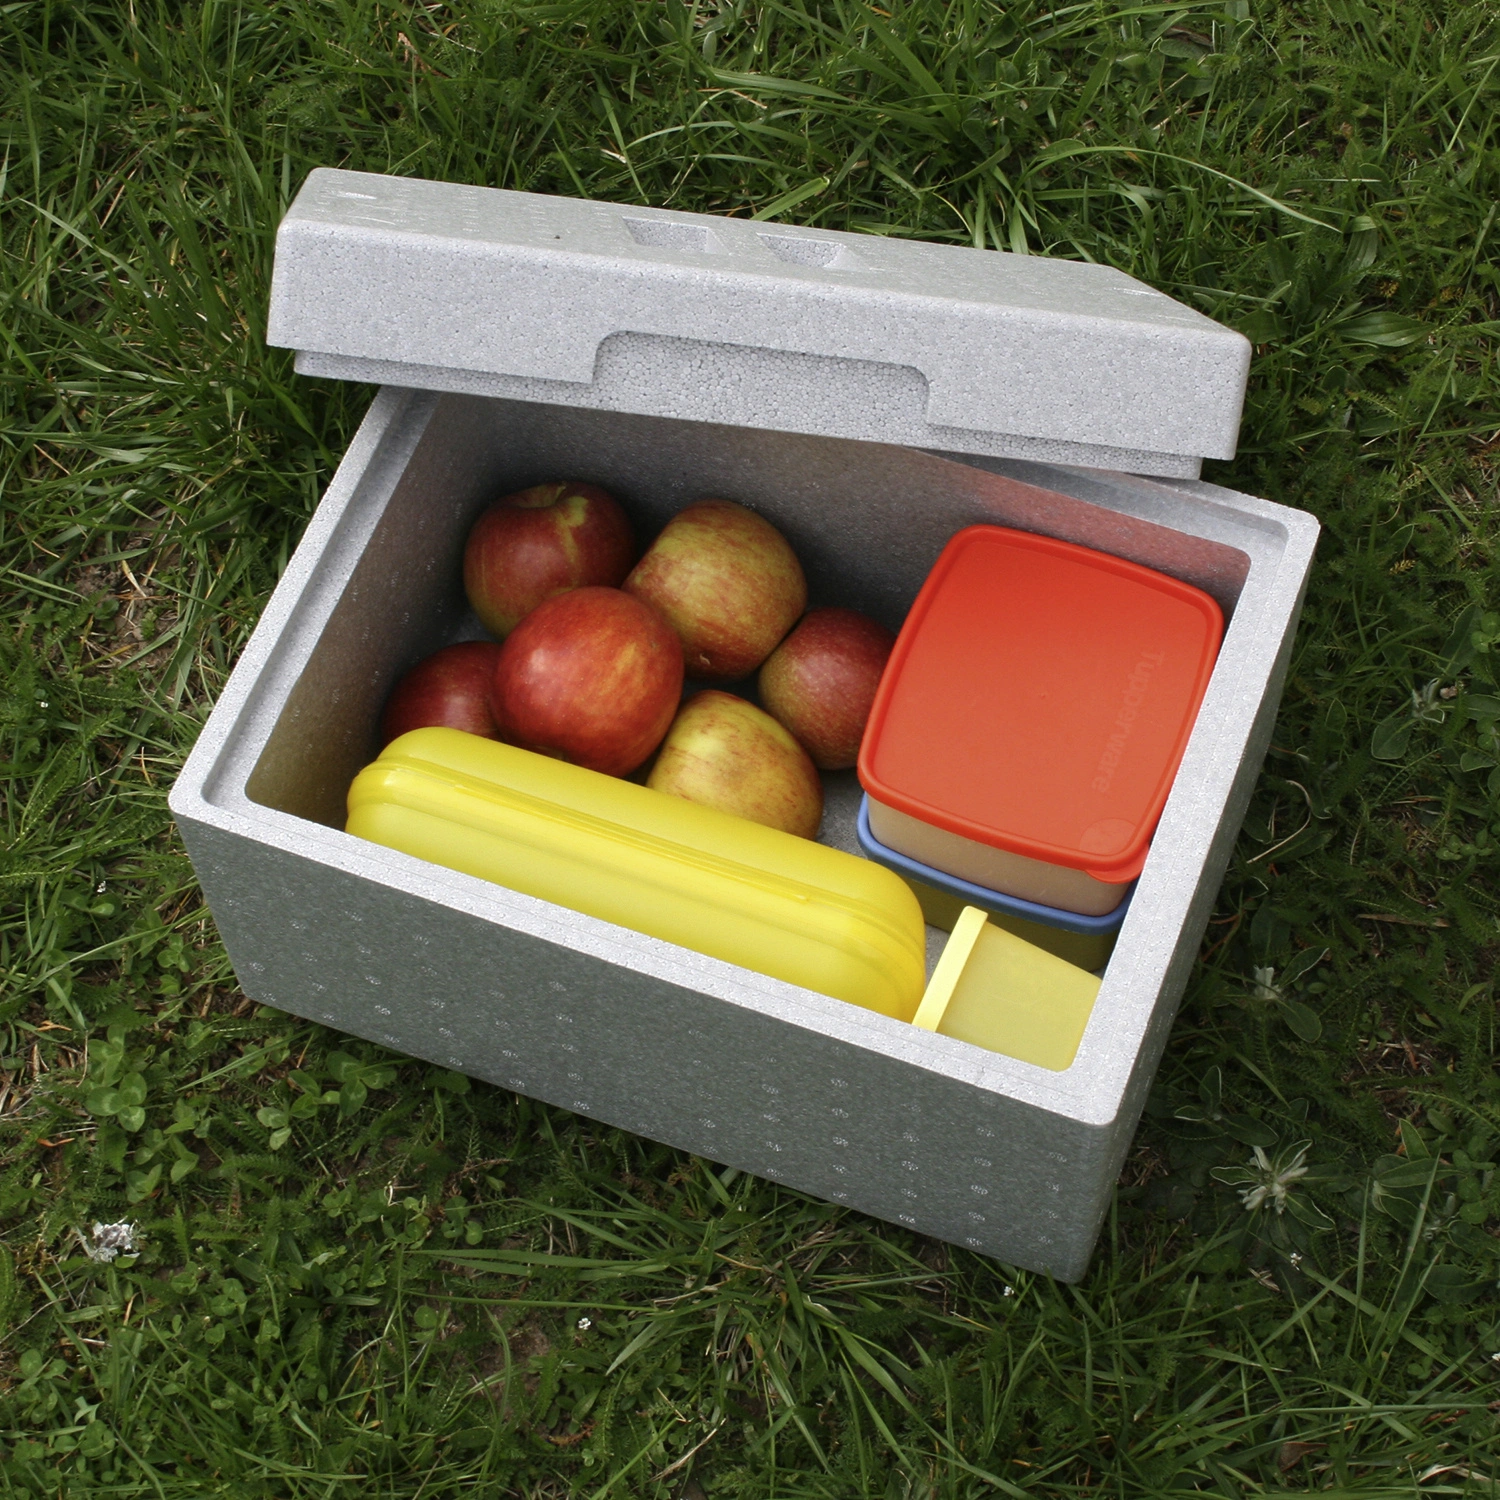 Thermobox (54,5 x 35 x 30 cm, Geeignet für: Lebensmittel